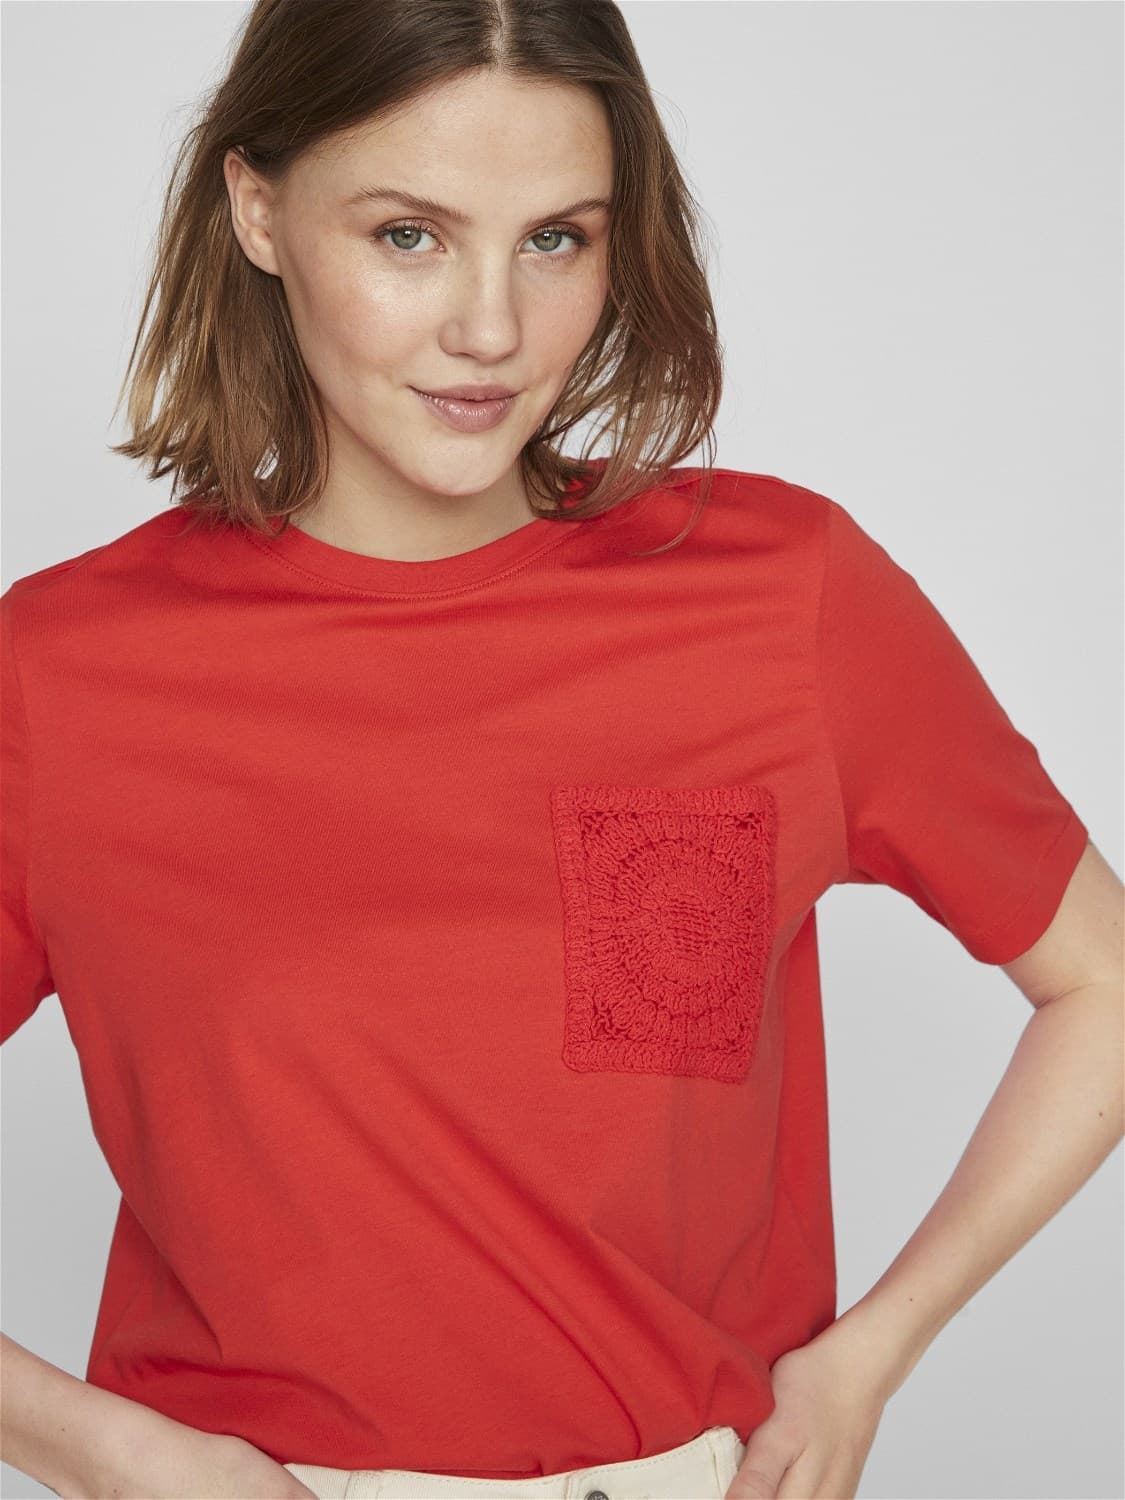 Camiseta crochet visybil rojo - Imagen 3